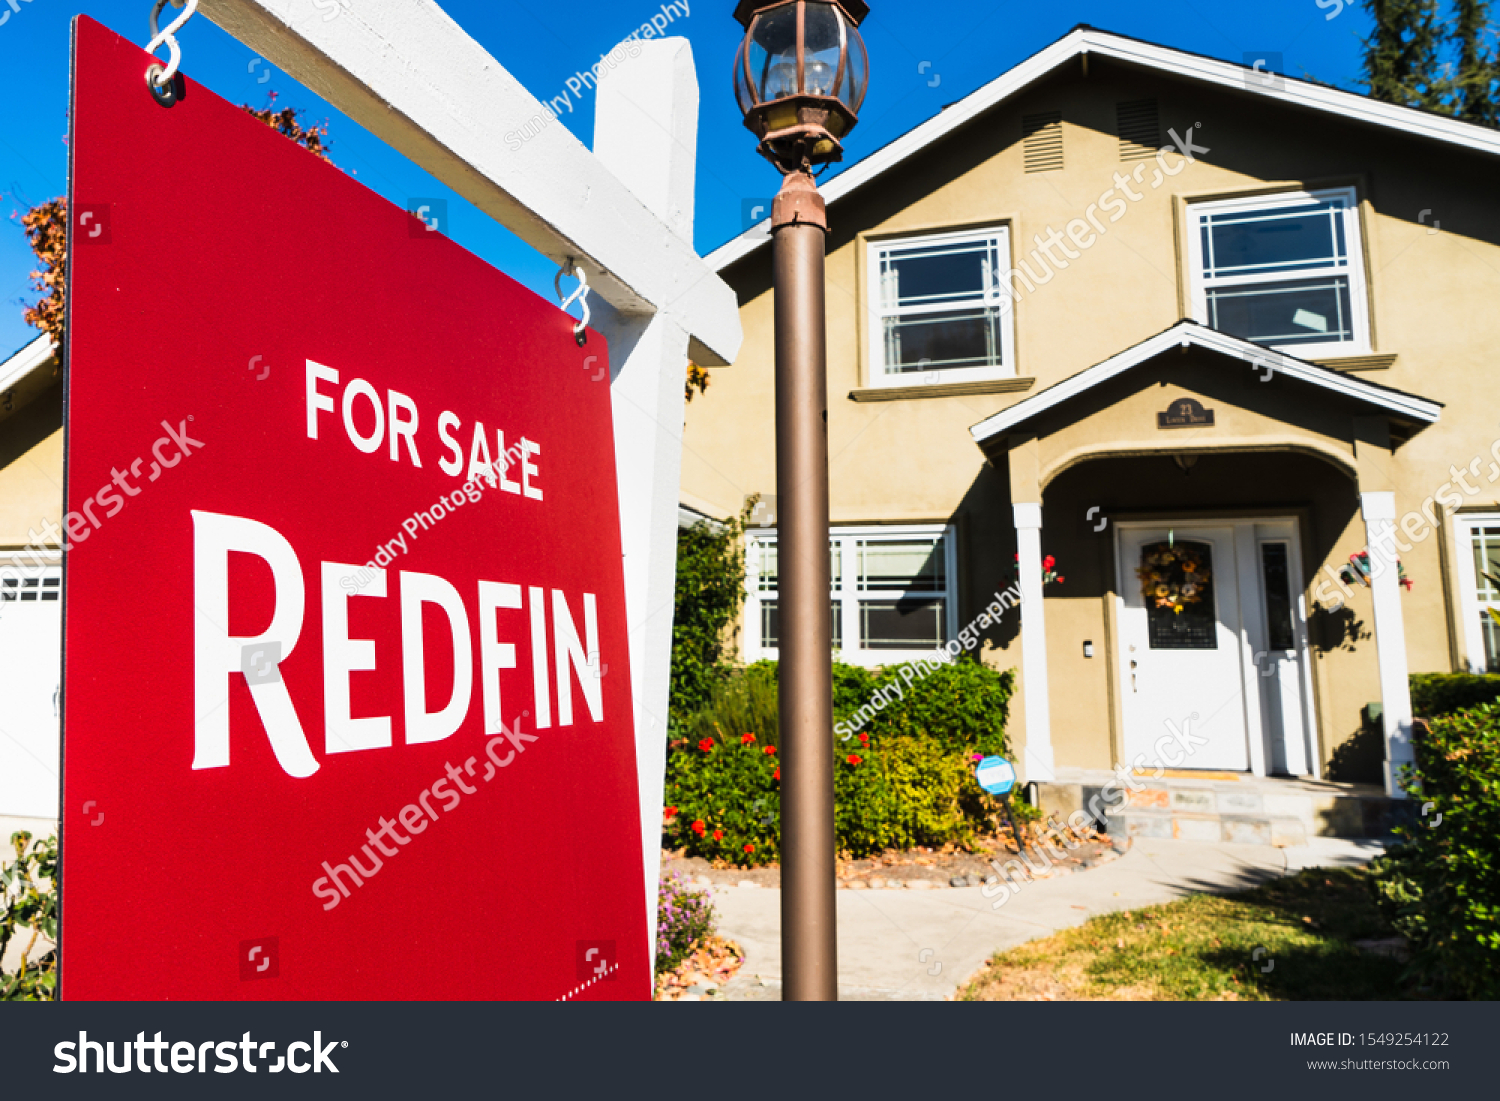 Redfin real estate orruk ardboyz